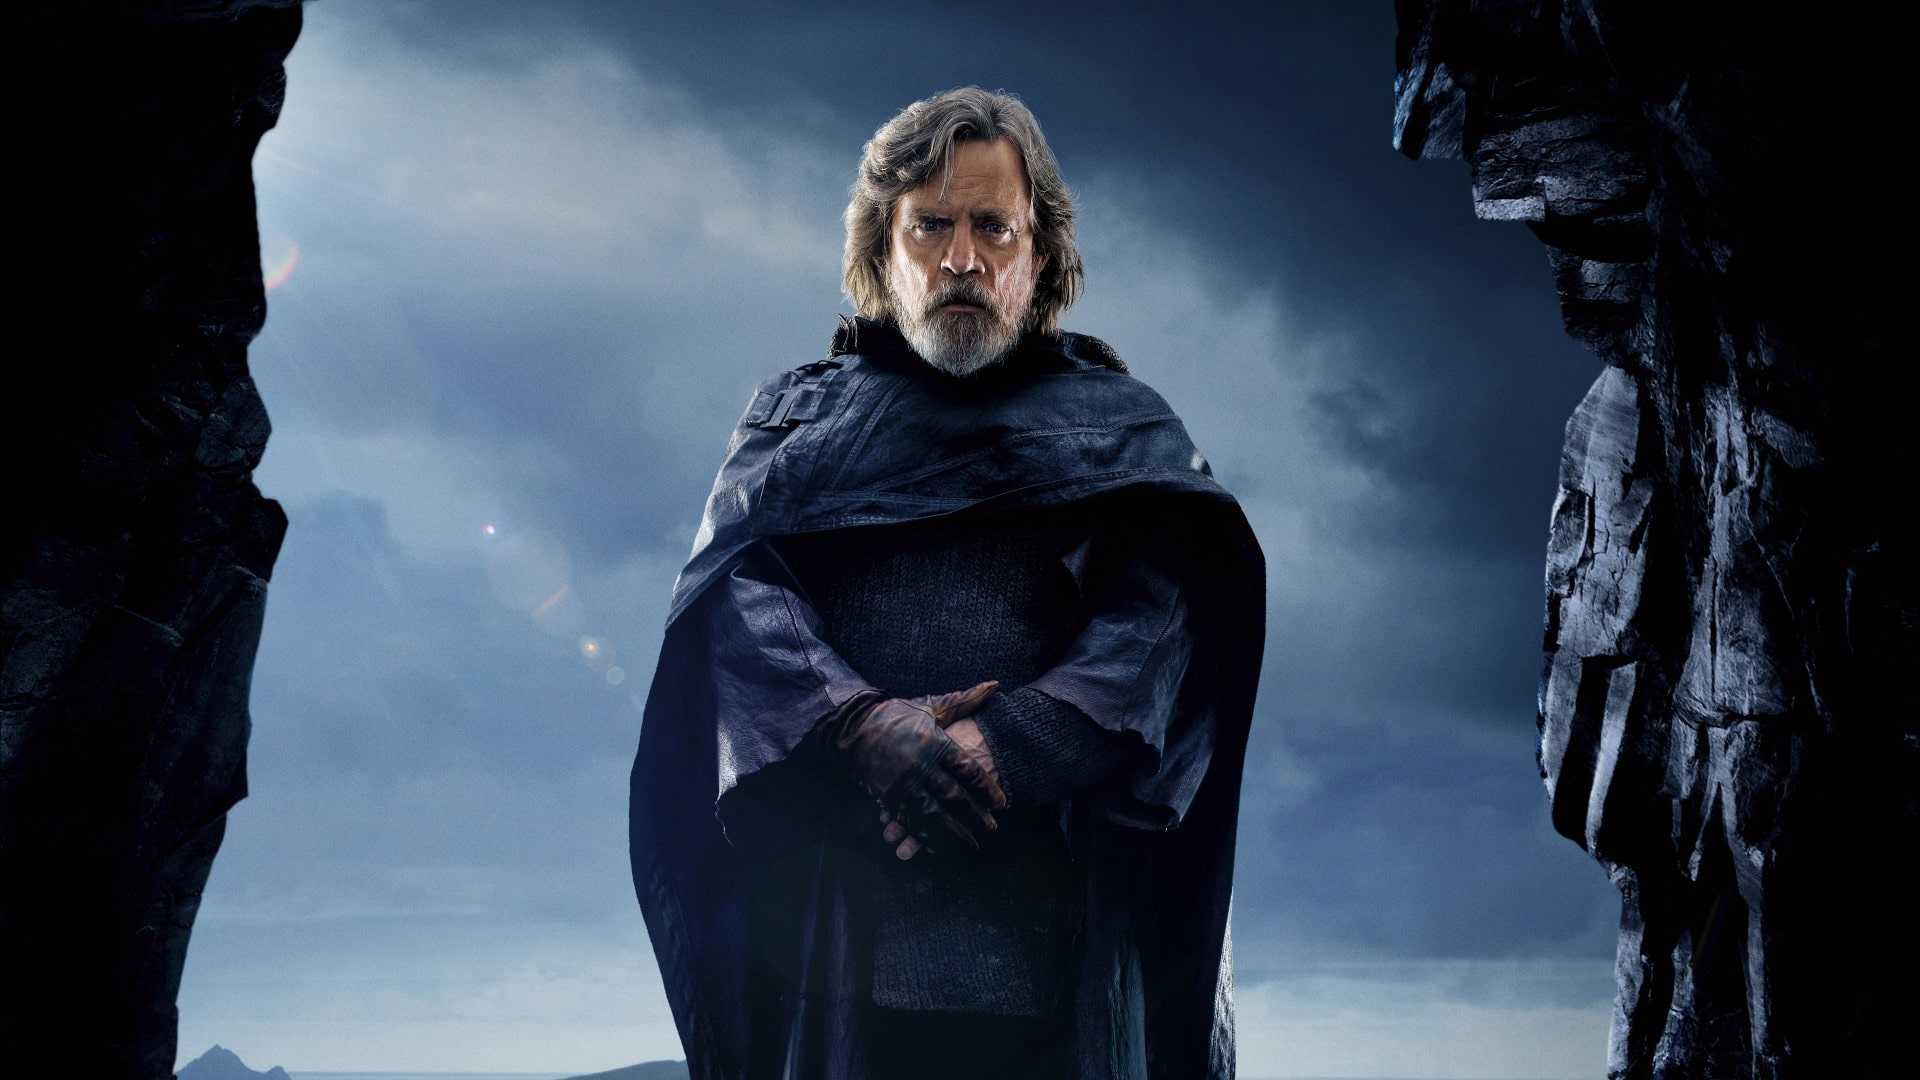 Luke Skywalker Wallpaper HD